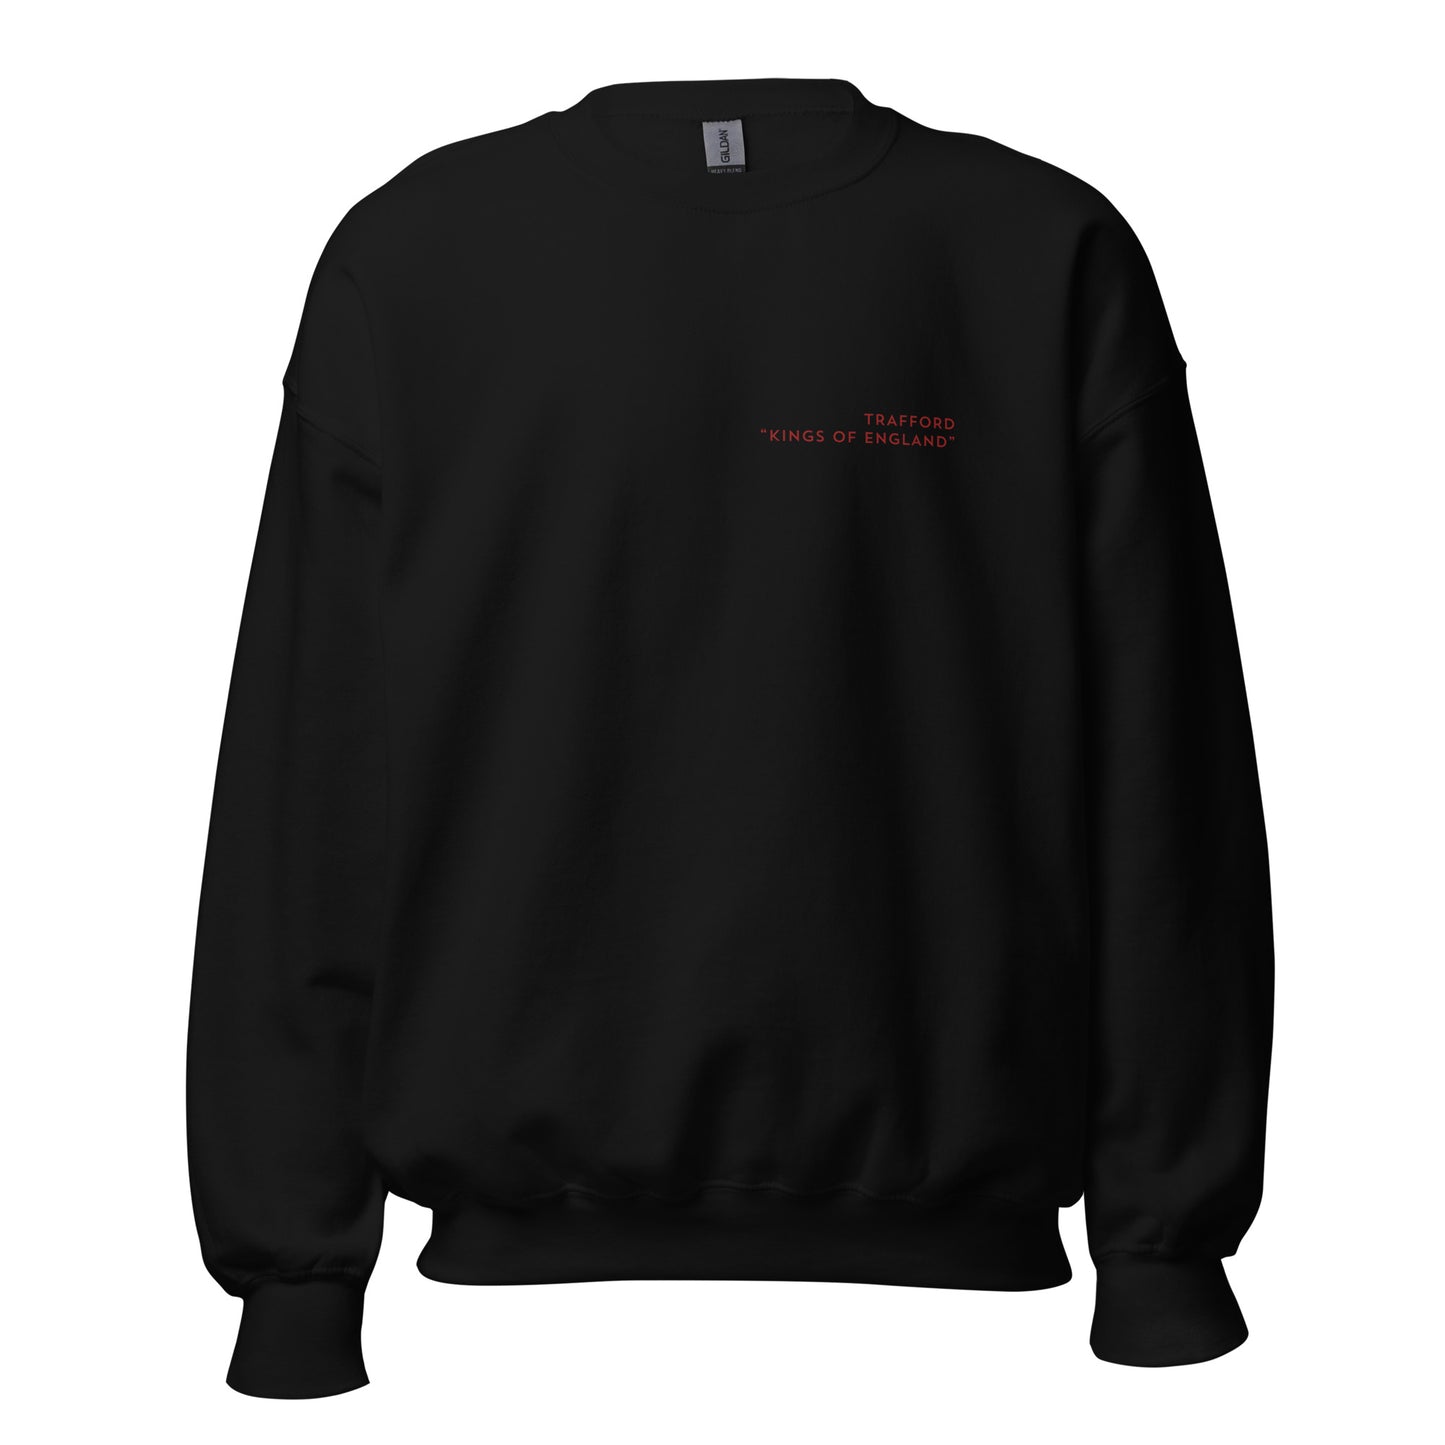 Trafford Modern Sweatshirt